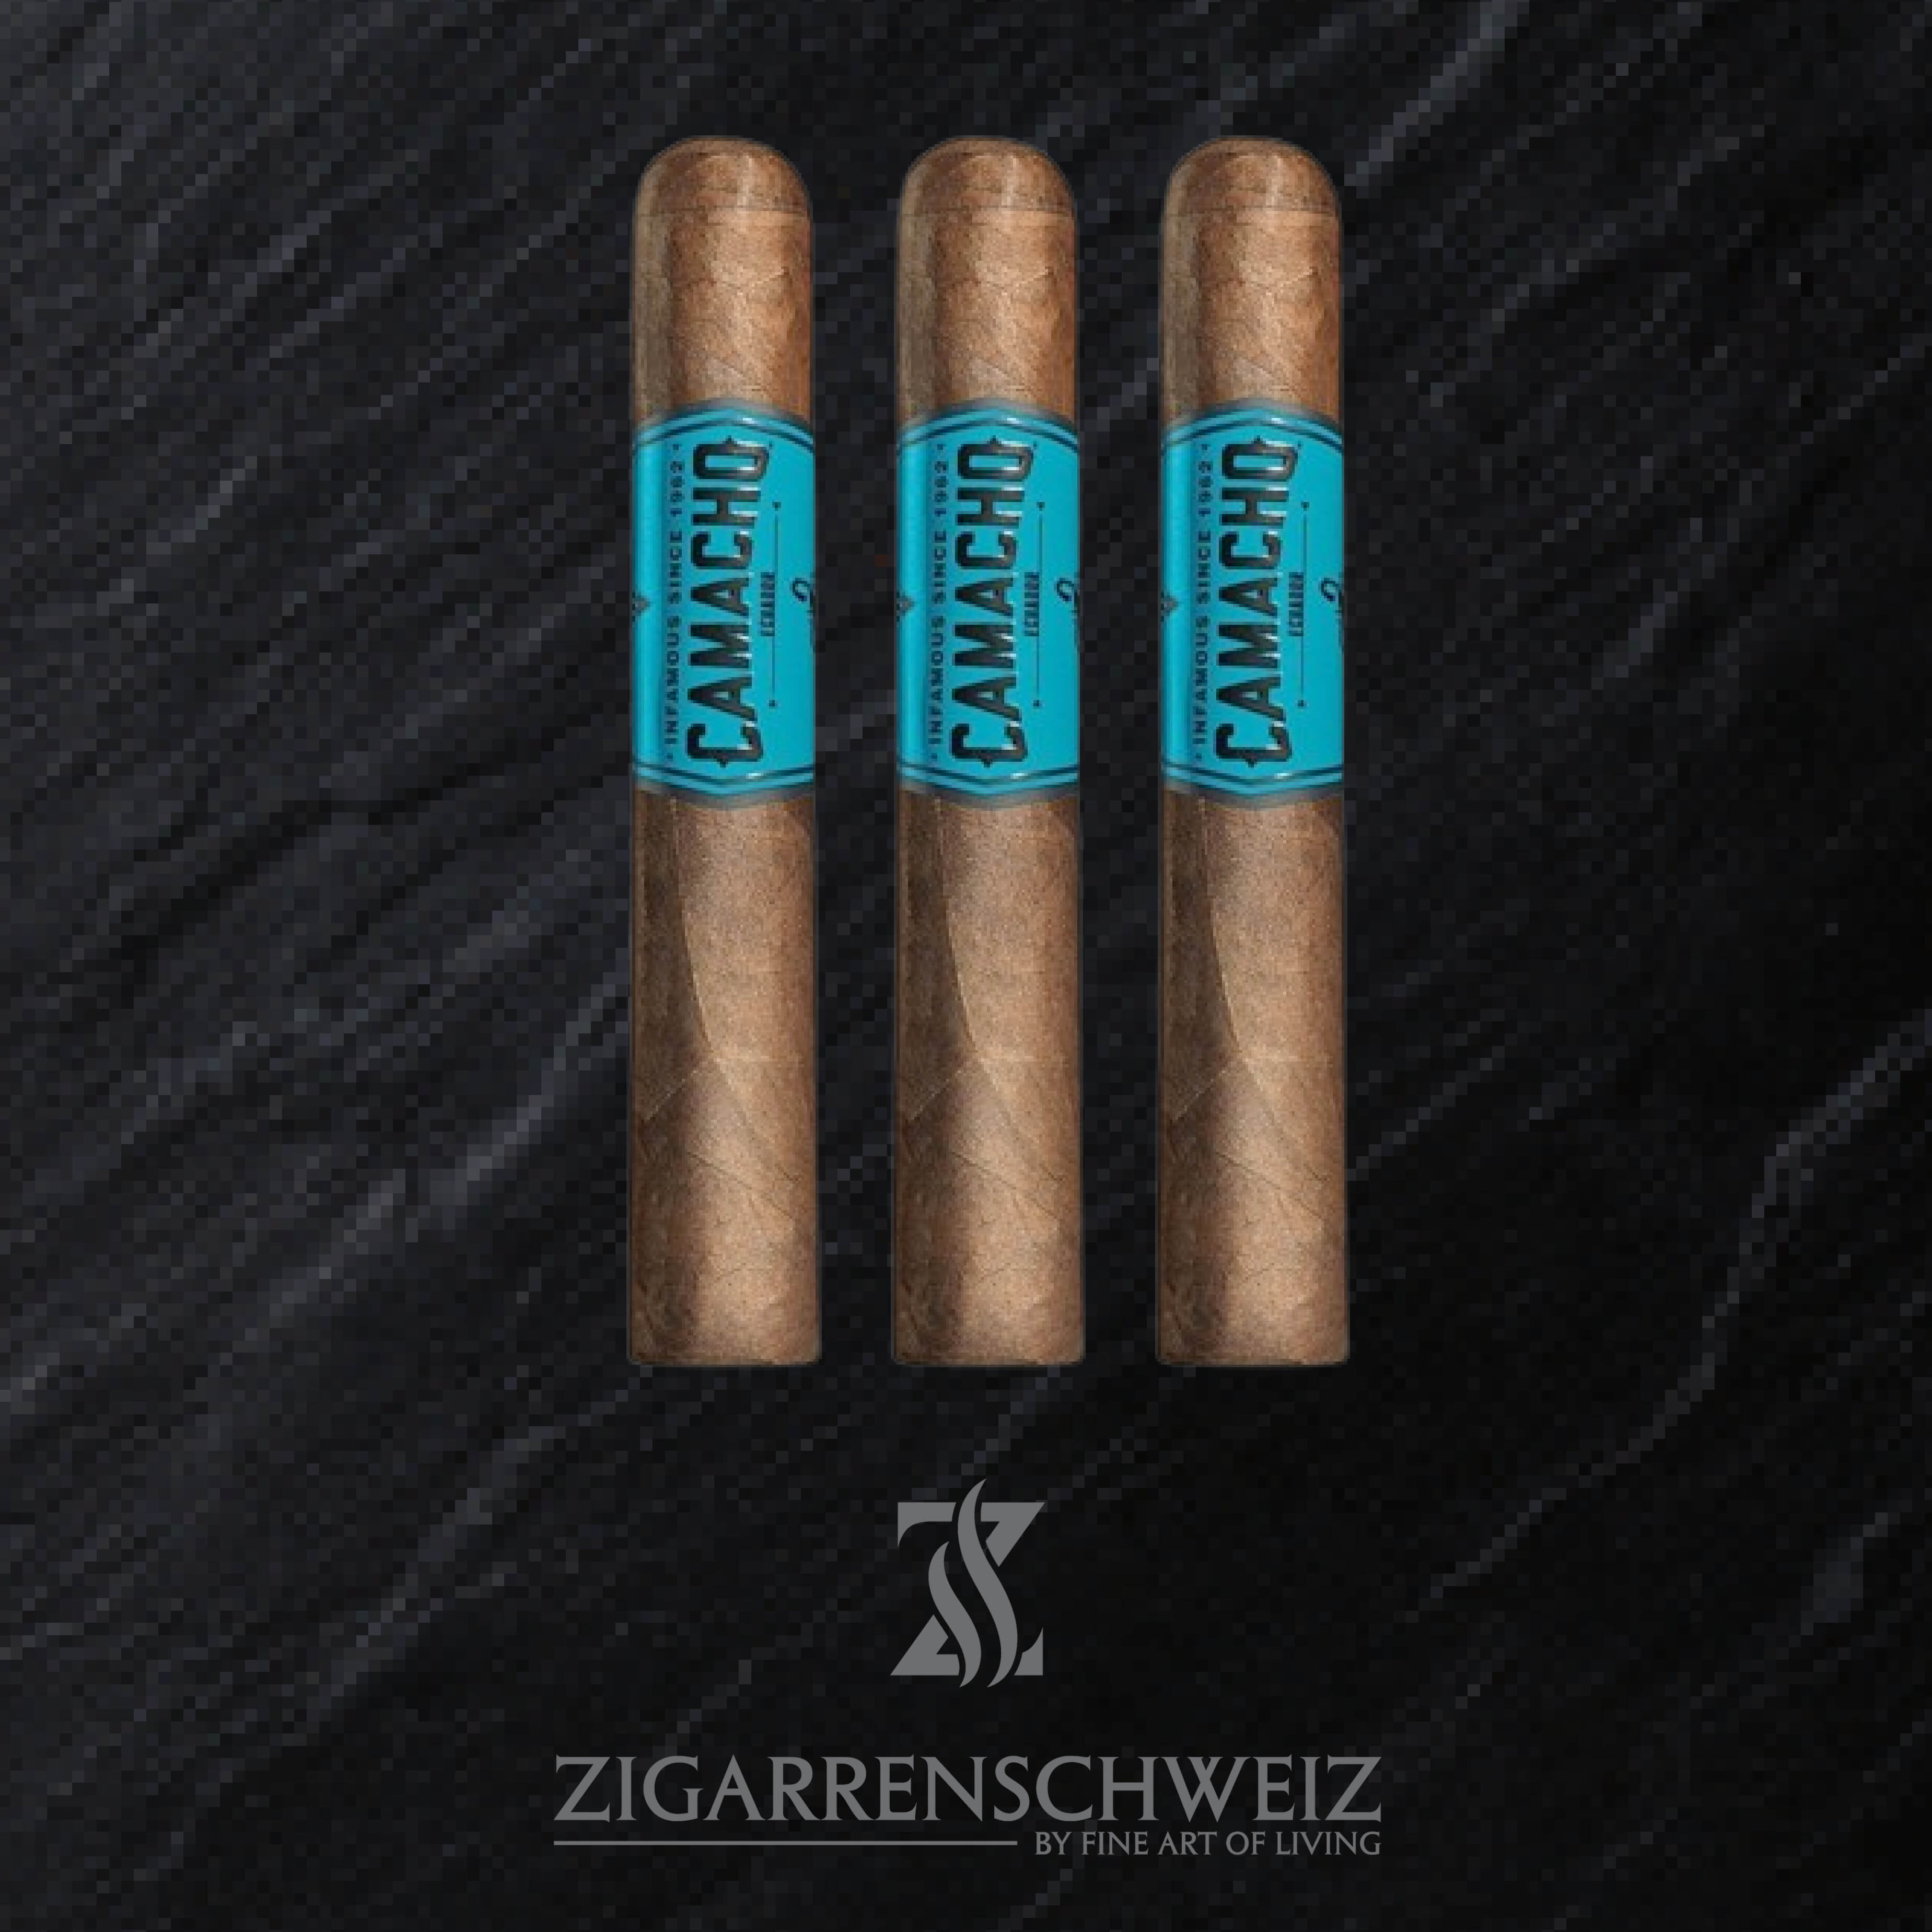 Camacho Ecuador Gordo Zigarren Schweiz 3er Zigarren Etui